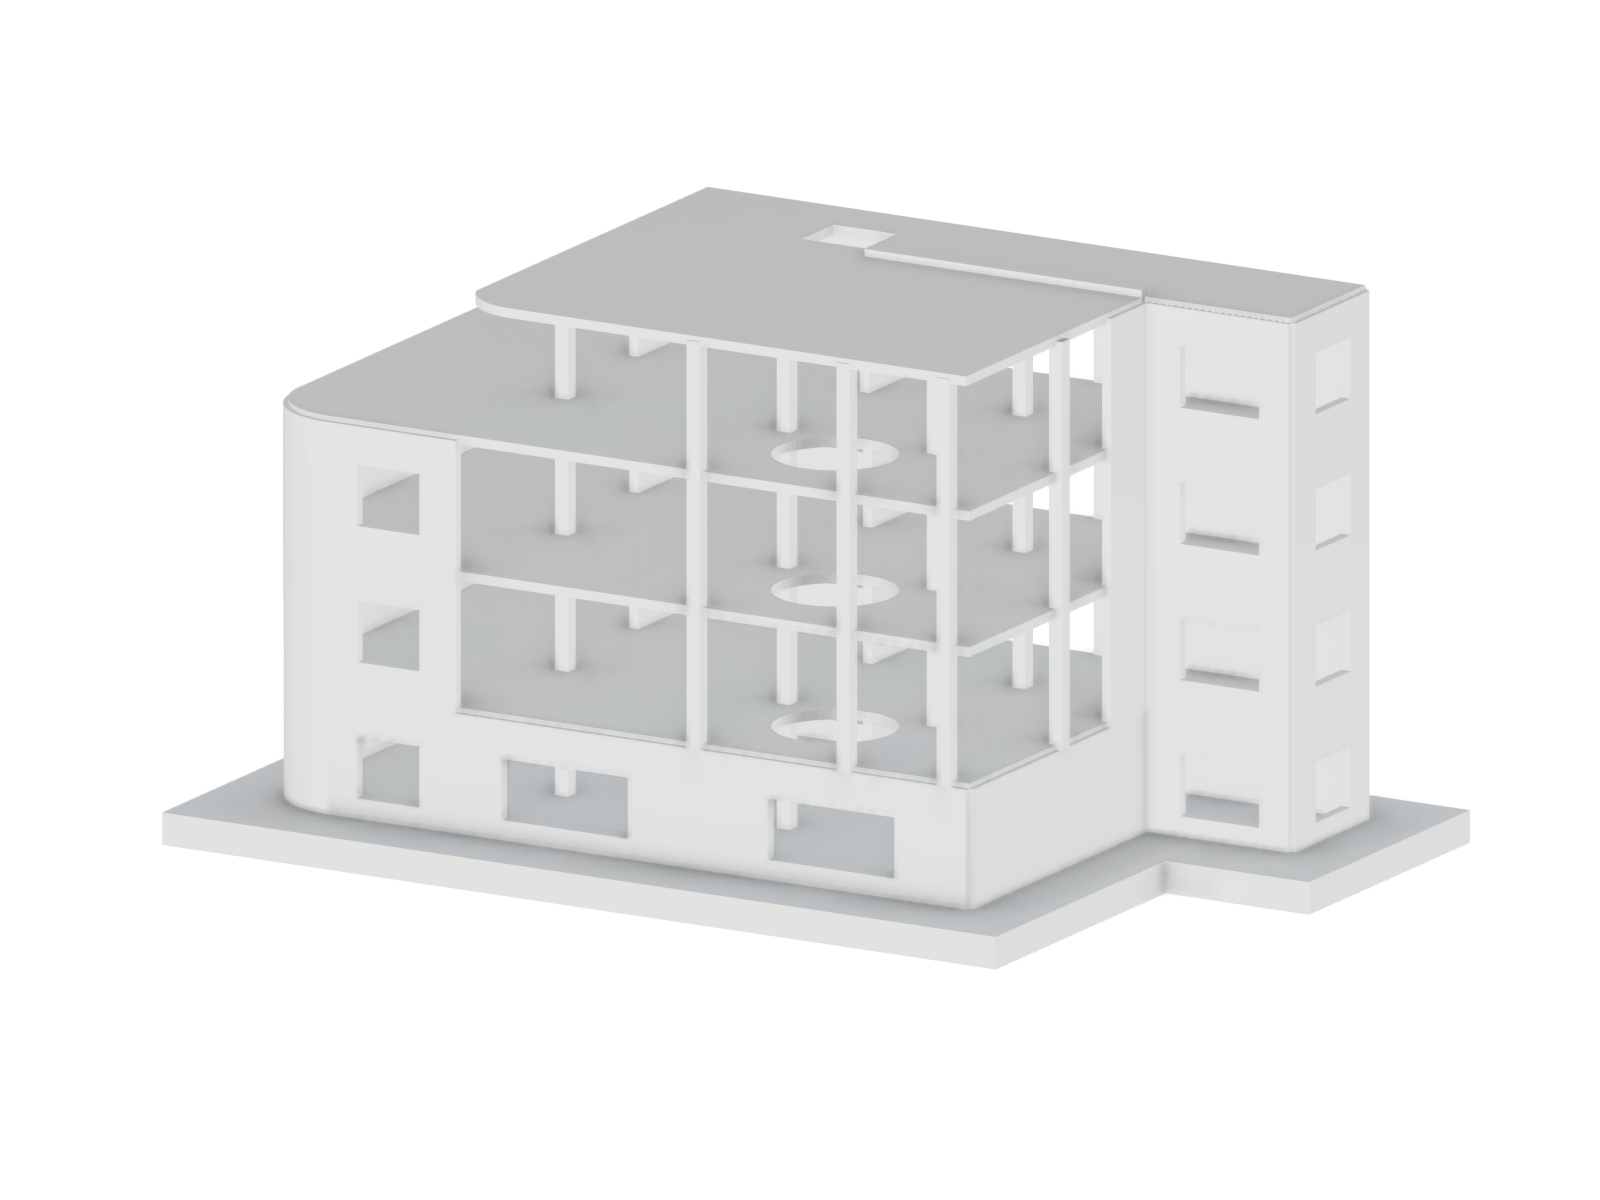 Model 000000 | Reinforced Concrete Building